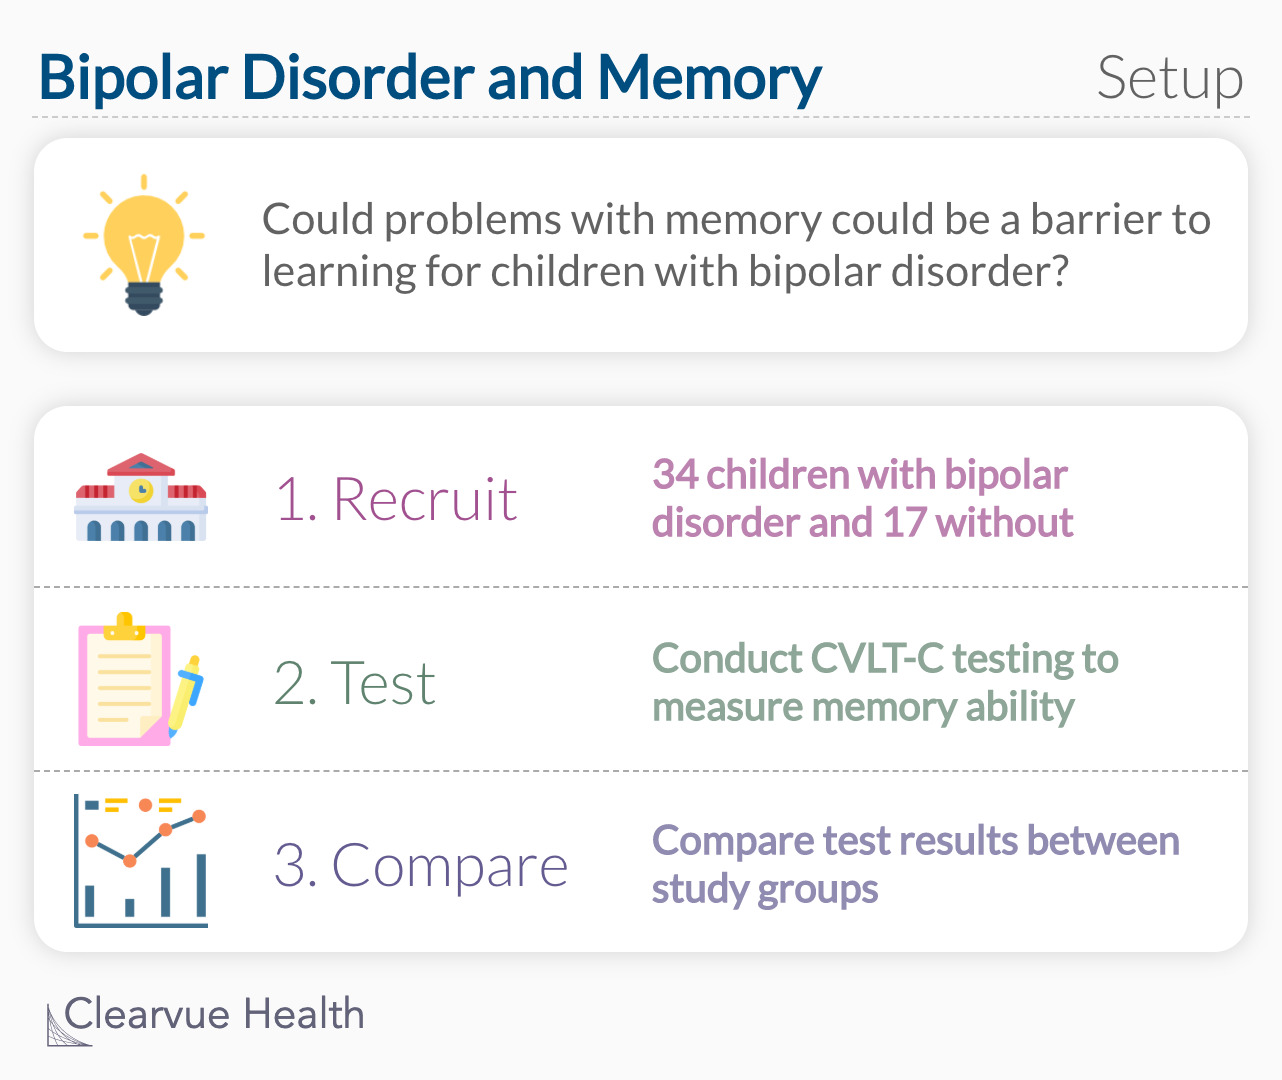 Bipolar Disorder and Memory: Study Setup